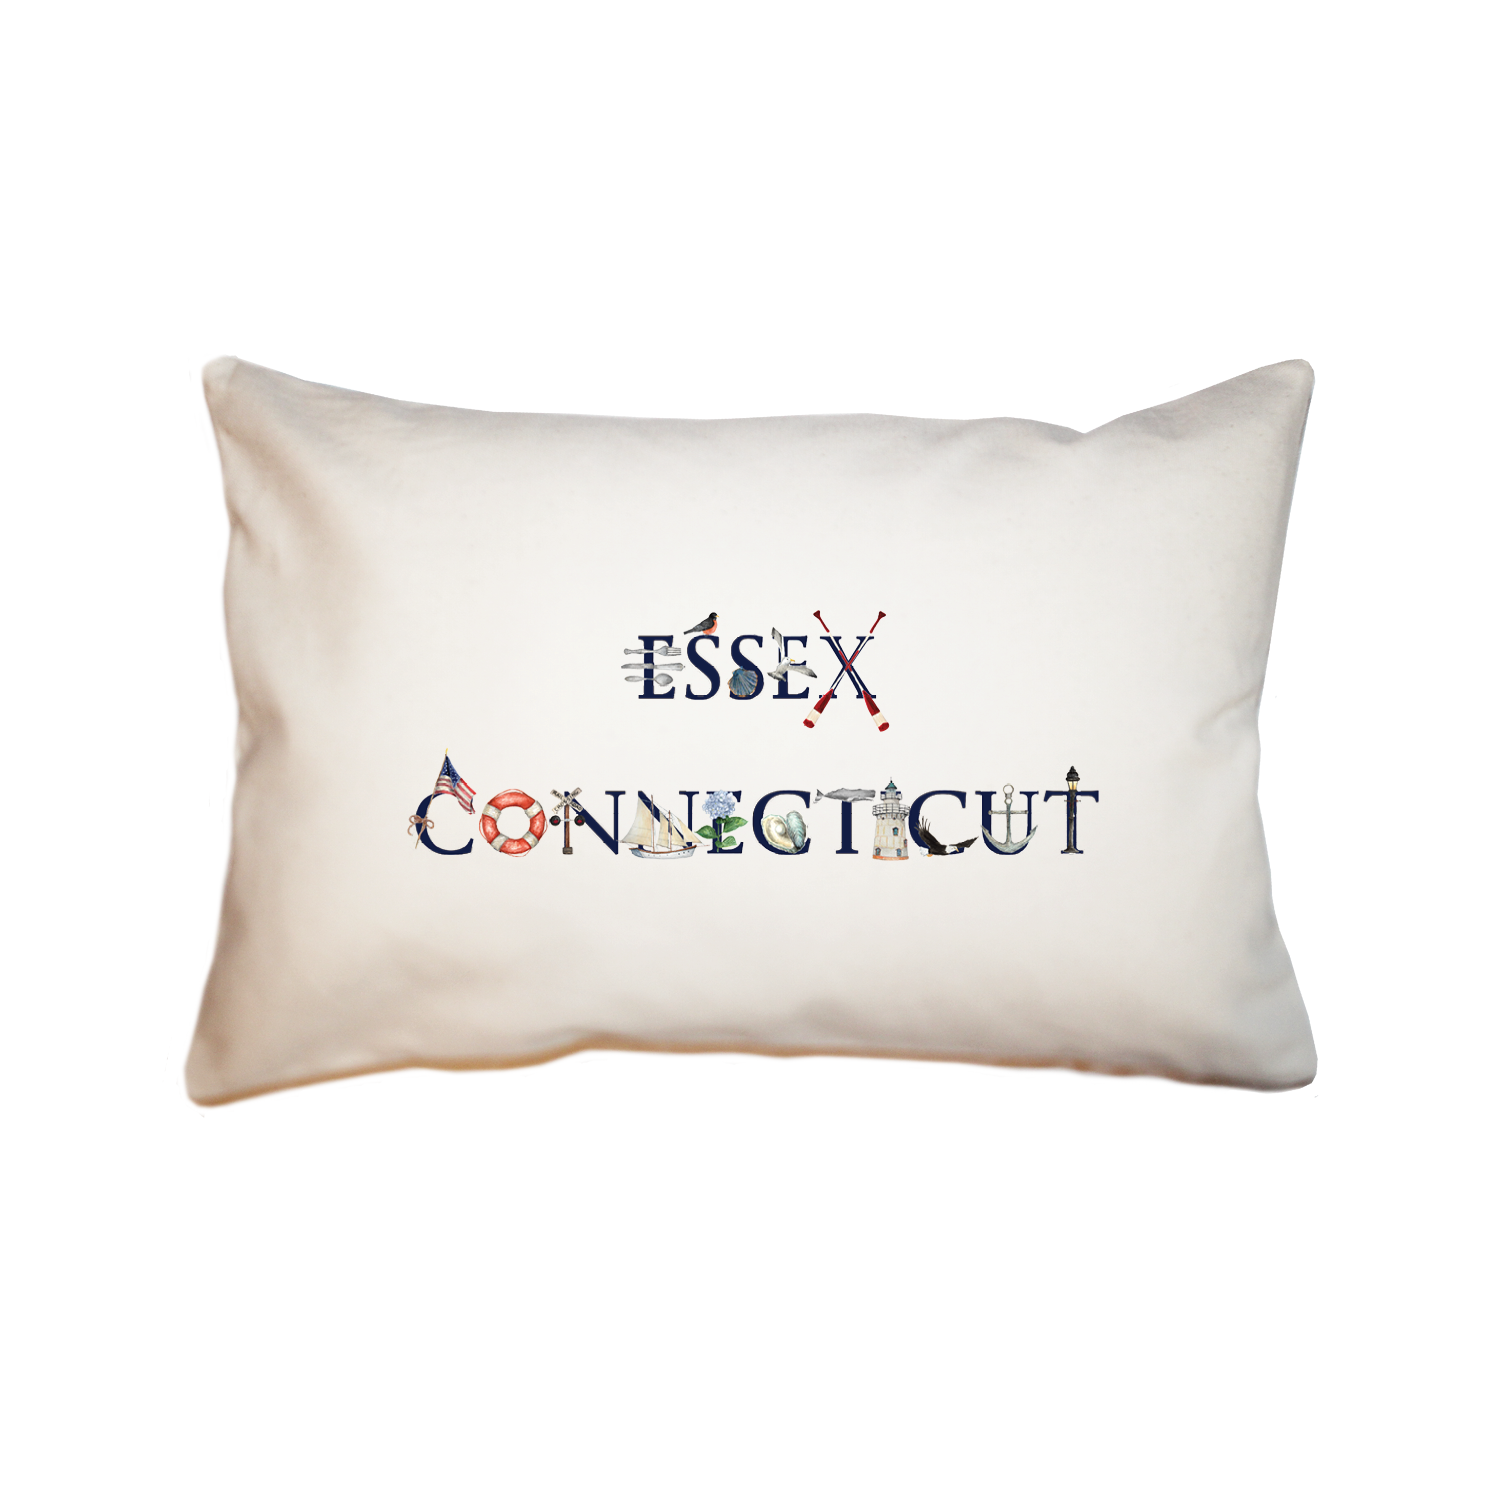 essex connecticut large rectangle pillow